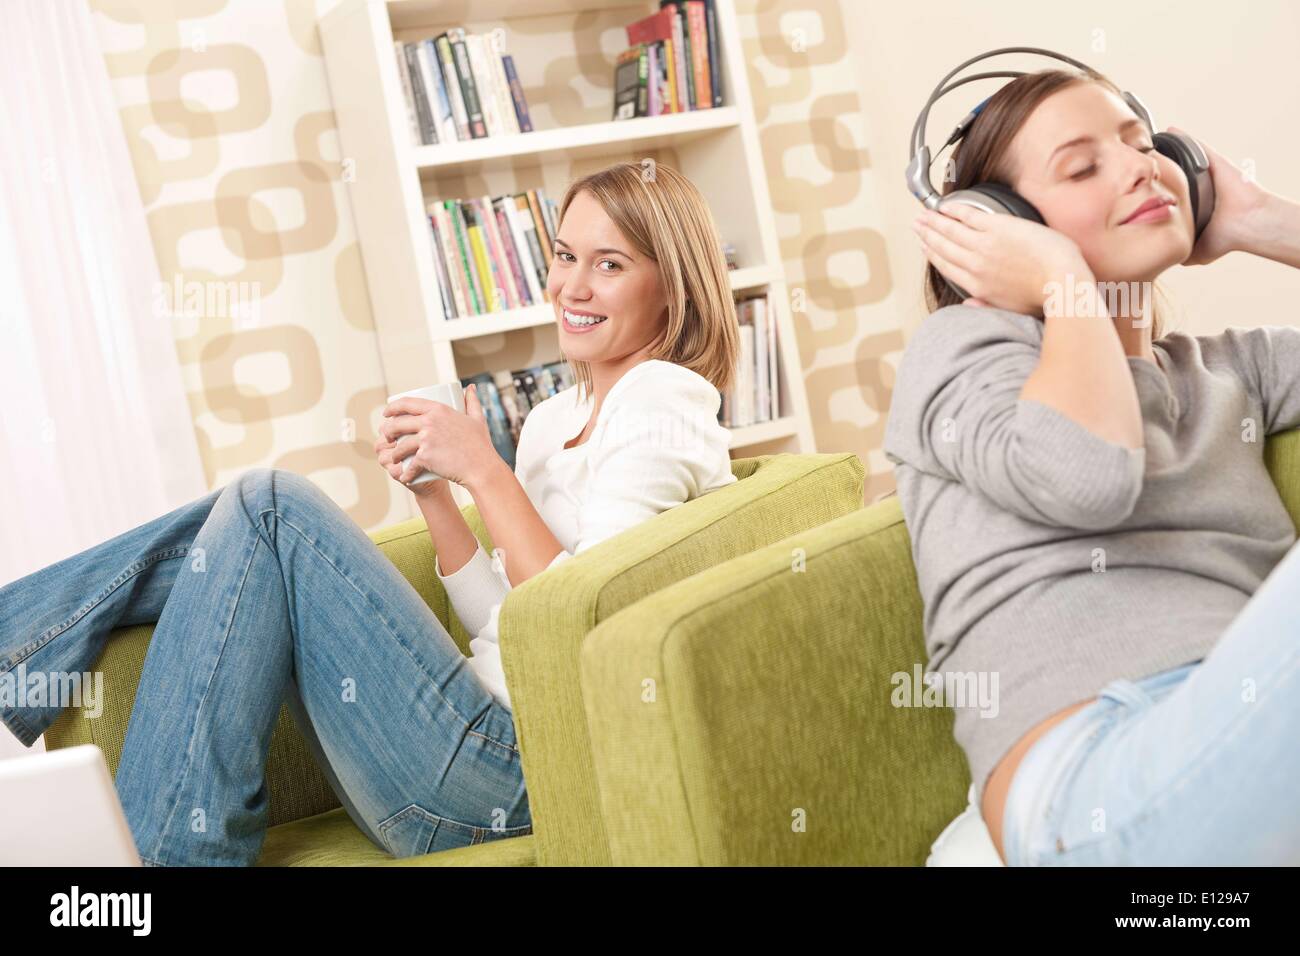 06 novembre 2009 - 6 novembre 2009 - Deux élèves - une adolescente se détendre dans le café-salon et écouter de la musique Banque D'Images